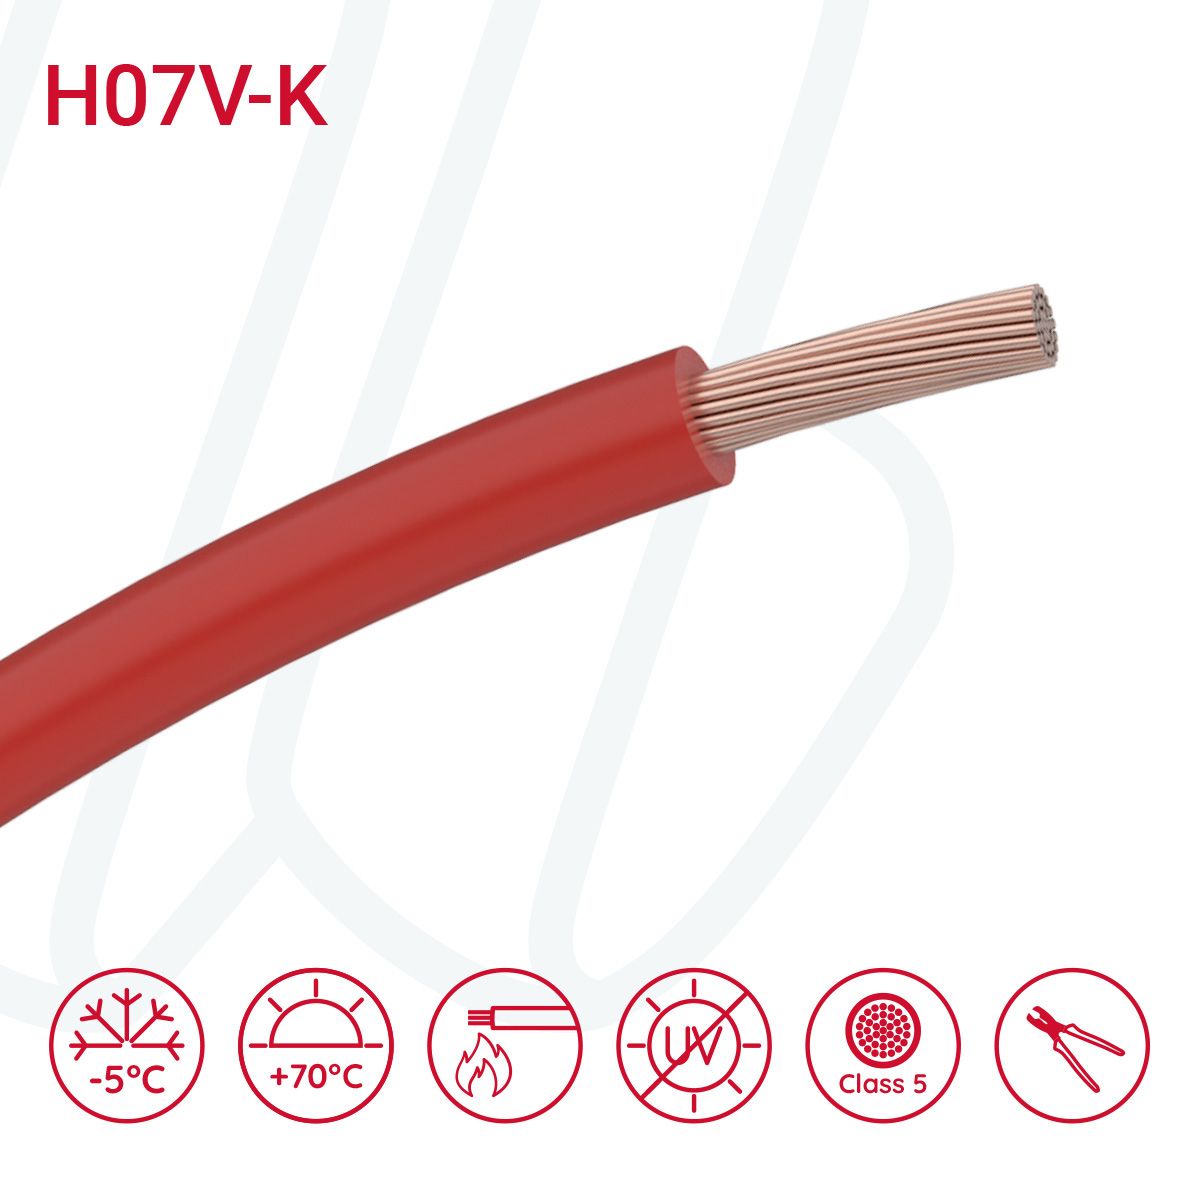 Провід монтажний гнучкий H07V-K 95 мм² червоний, 01, 95